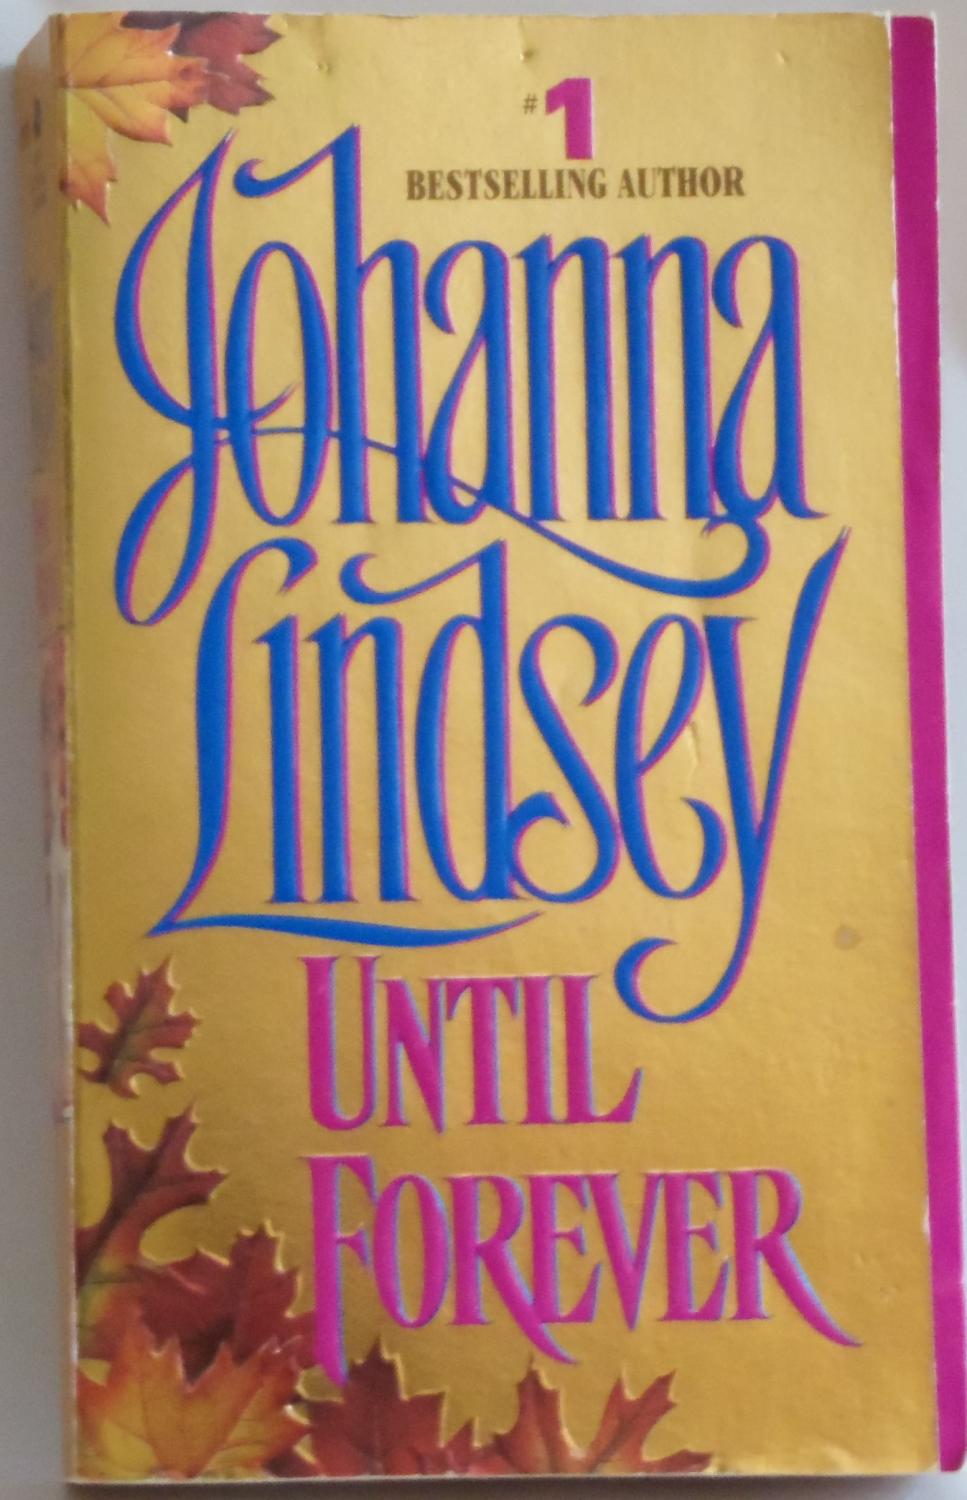 Until Forever [Mass Market Paperback] by Lindsey, Johanna - Lindsey, Johanna